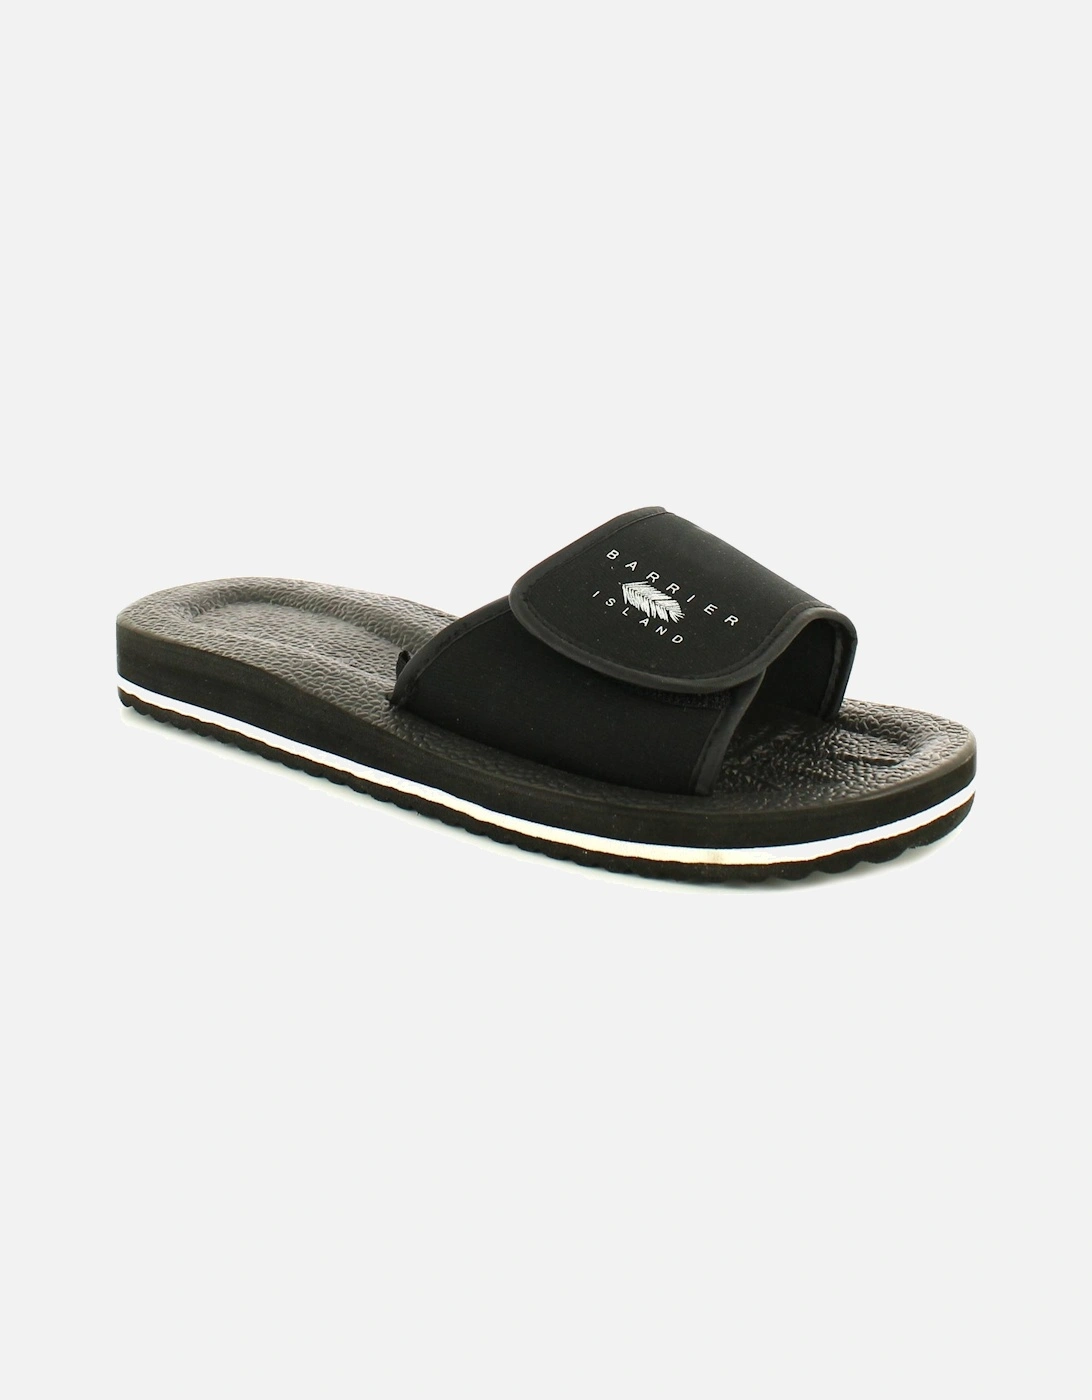 Mens Sandals Mules Flip Flops Slip On black white UK Size, 6 of 5